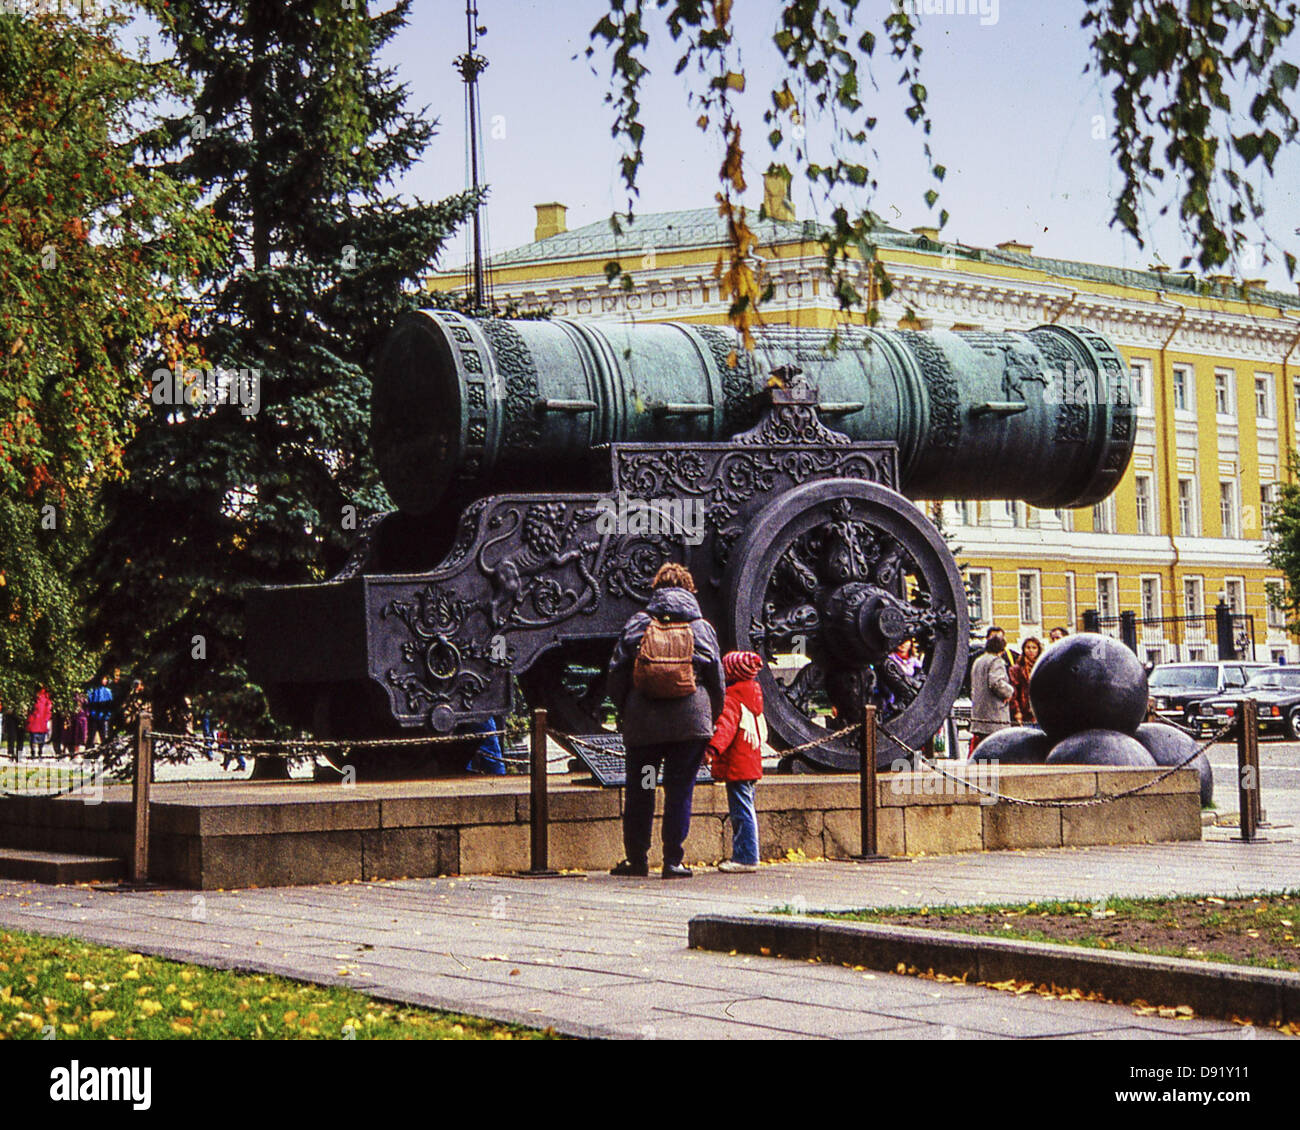 Ottobre 2, 1992 - Mosca, RU - il Tsar Cannon, sul display i motivi del Cremlino di Mosca, è stato colato in 1586 dal maestro russo ruota in bronzo Andrey Chokhov dell'ordine dello zar Feodor Ioannovich. 9.5Â ft (5,94 m.) di lunghezza e pesa 39 tonnellate (35,380 kg) è soprattutto simbolico e non è mai stata utilizzata in una guerra, ma reca tracce di almeno uno sparo. Si tratta di una grande attrazione turistica e si trova appena passato il Cremlino Armory, rivolto verso il Cremlino senato. (Credito Immagine: © Arnold Drapkin/ZUMAPRESS.com) Foto Stock